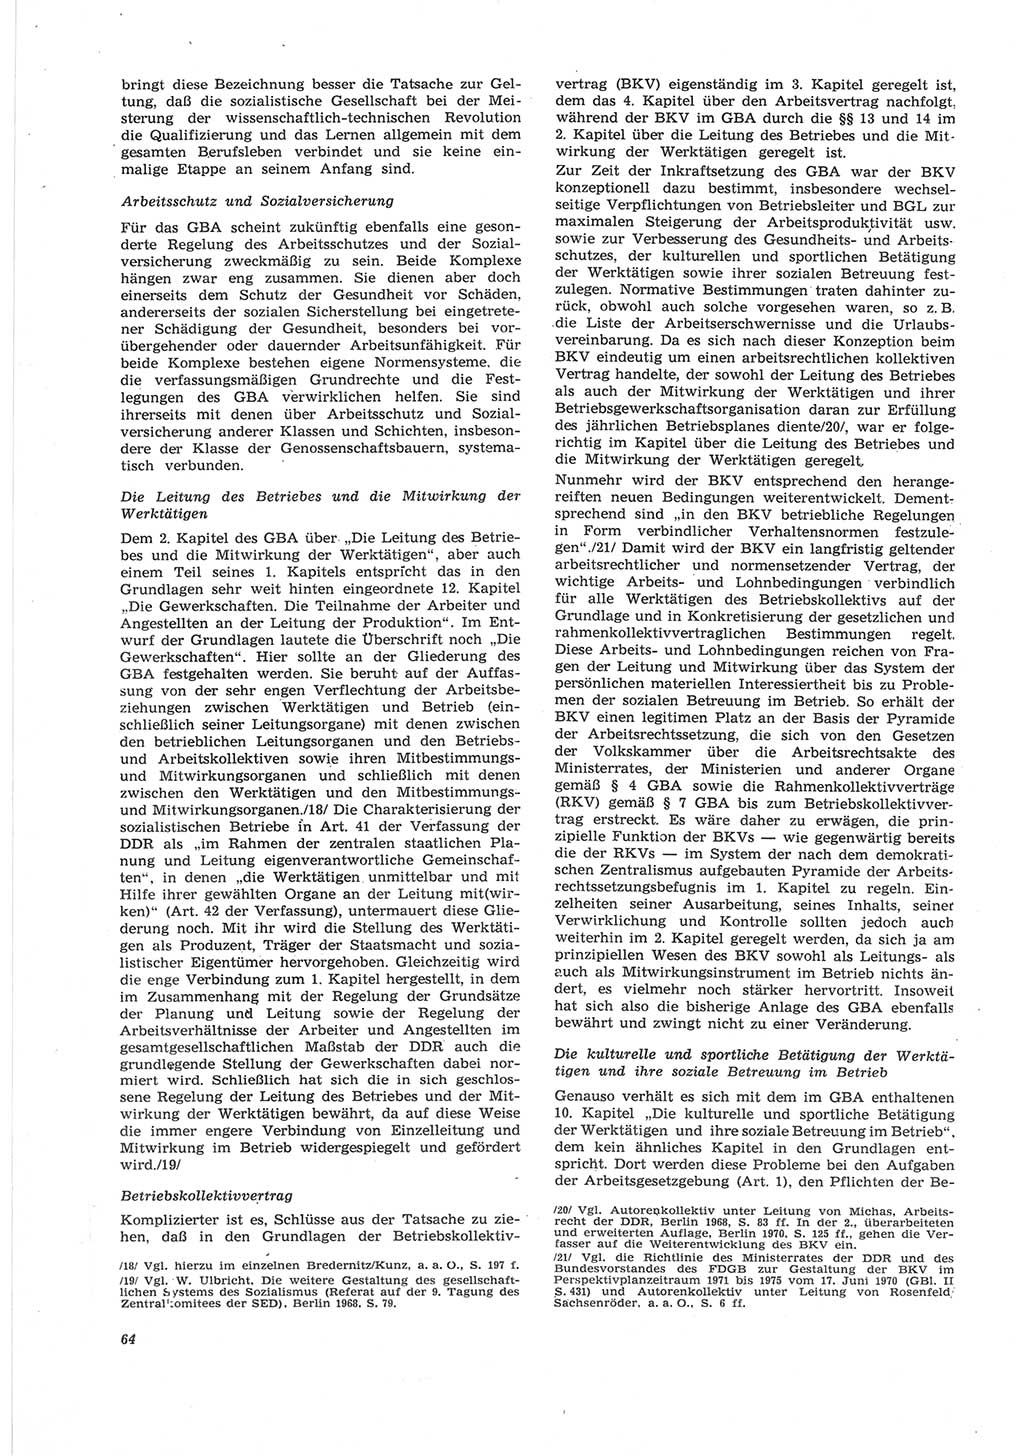 Neue Justiz (NJ), Zeitschrift für Recht und Rechtswissenschaft [Deutsche Demokratische Republik (DDR)], 25. Jahrgang 1971, Seite 64 (NJ DDR 1971, S. 64)